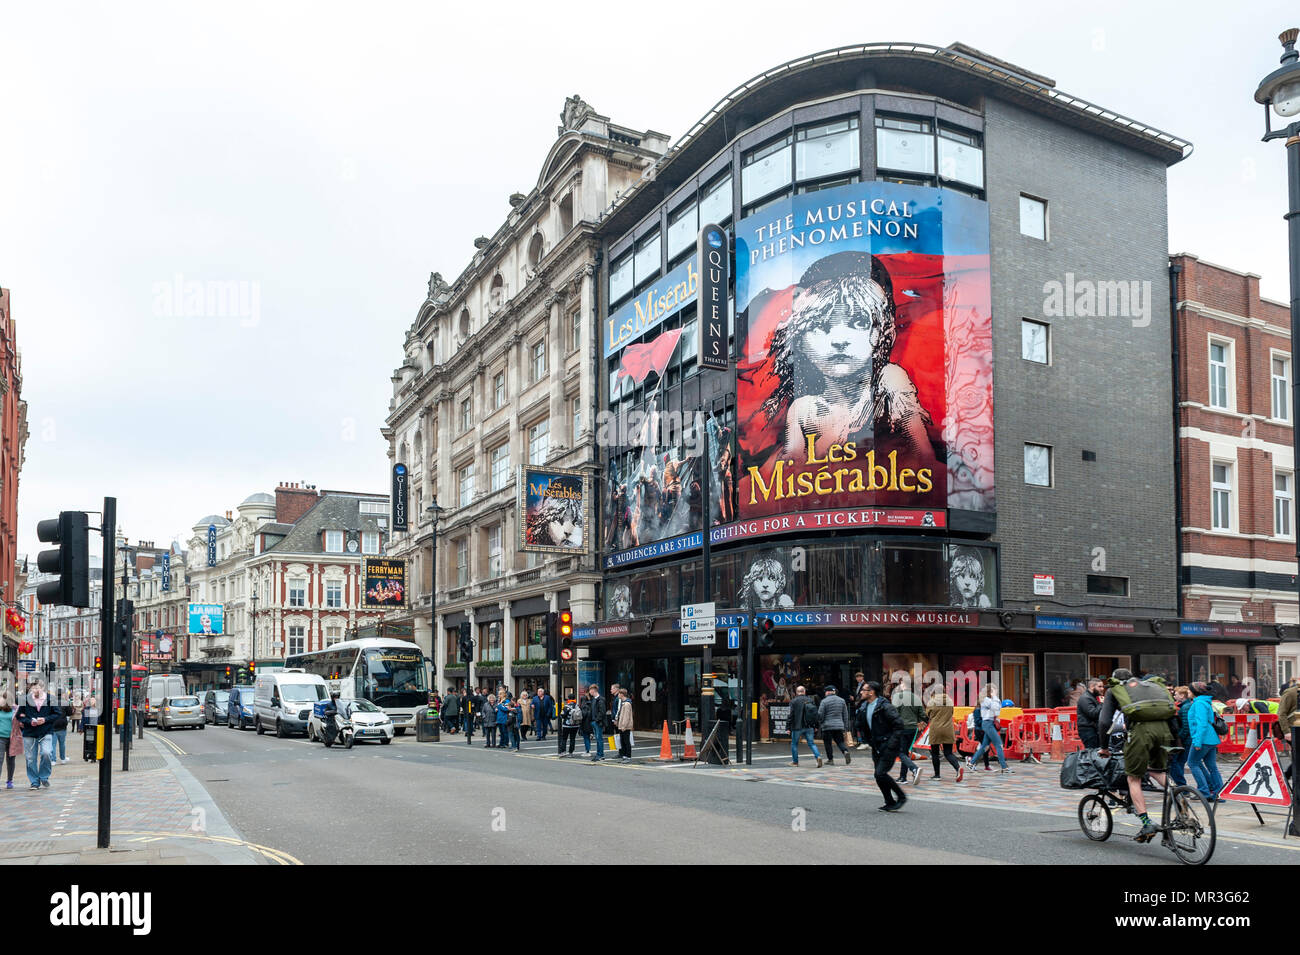 Londres, UK - Avril 2018 : Queens Theatre, West End theatre Shaftesbury Avenue situé dans l'exécution de la production courante de Les Misérables Banque D'Images